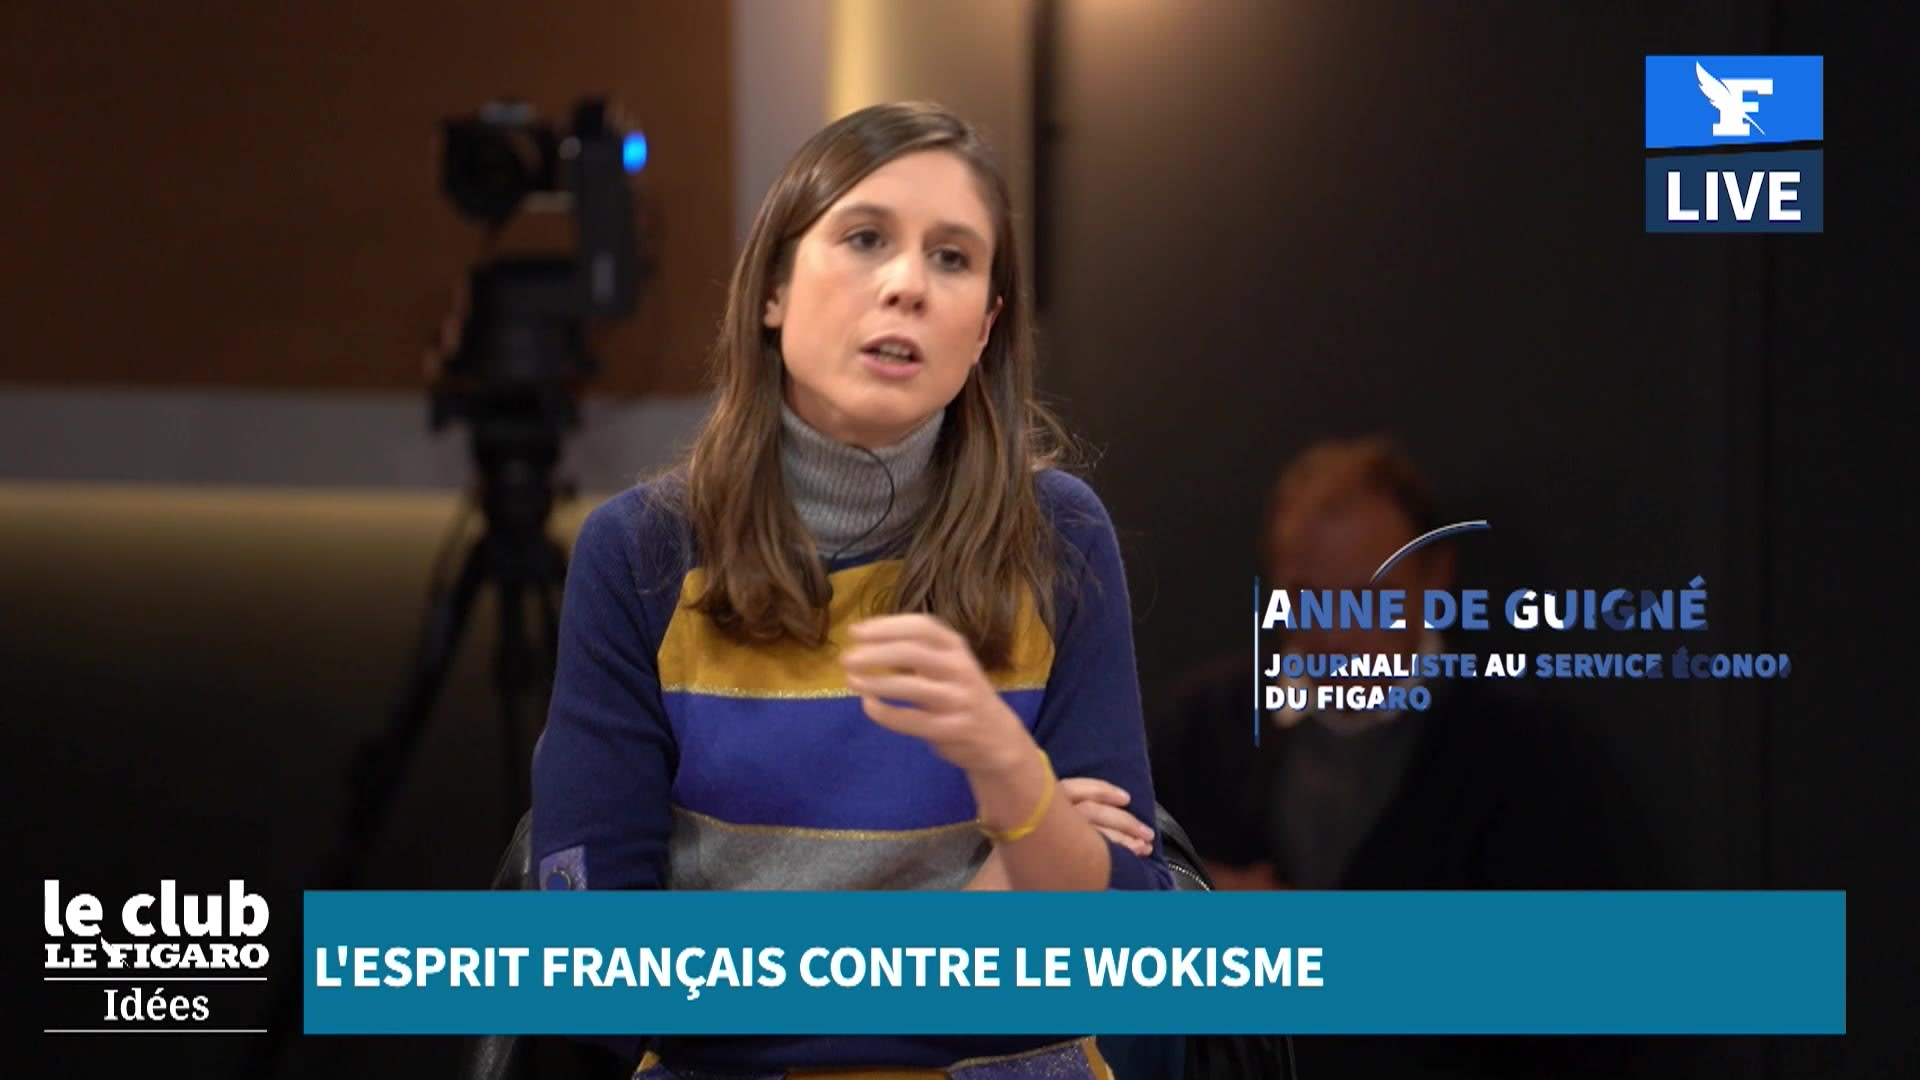 Anne de Guigné: «Dans les entreprises françaises il y a un mouvement woke très clair, mais il y a aussi beaucoup de résistance»